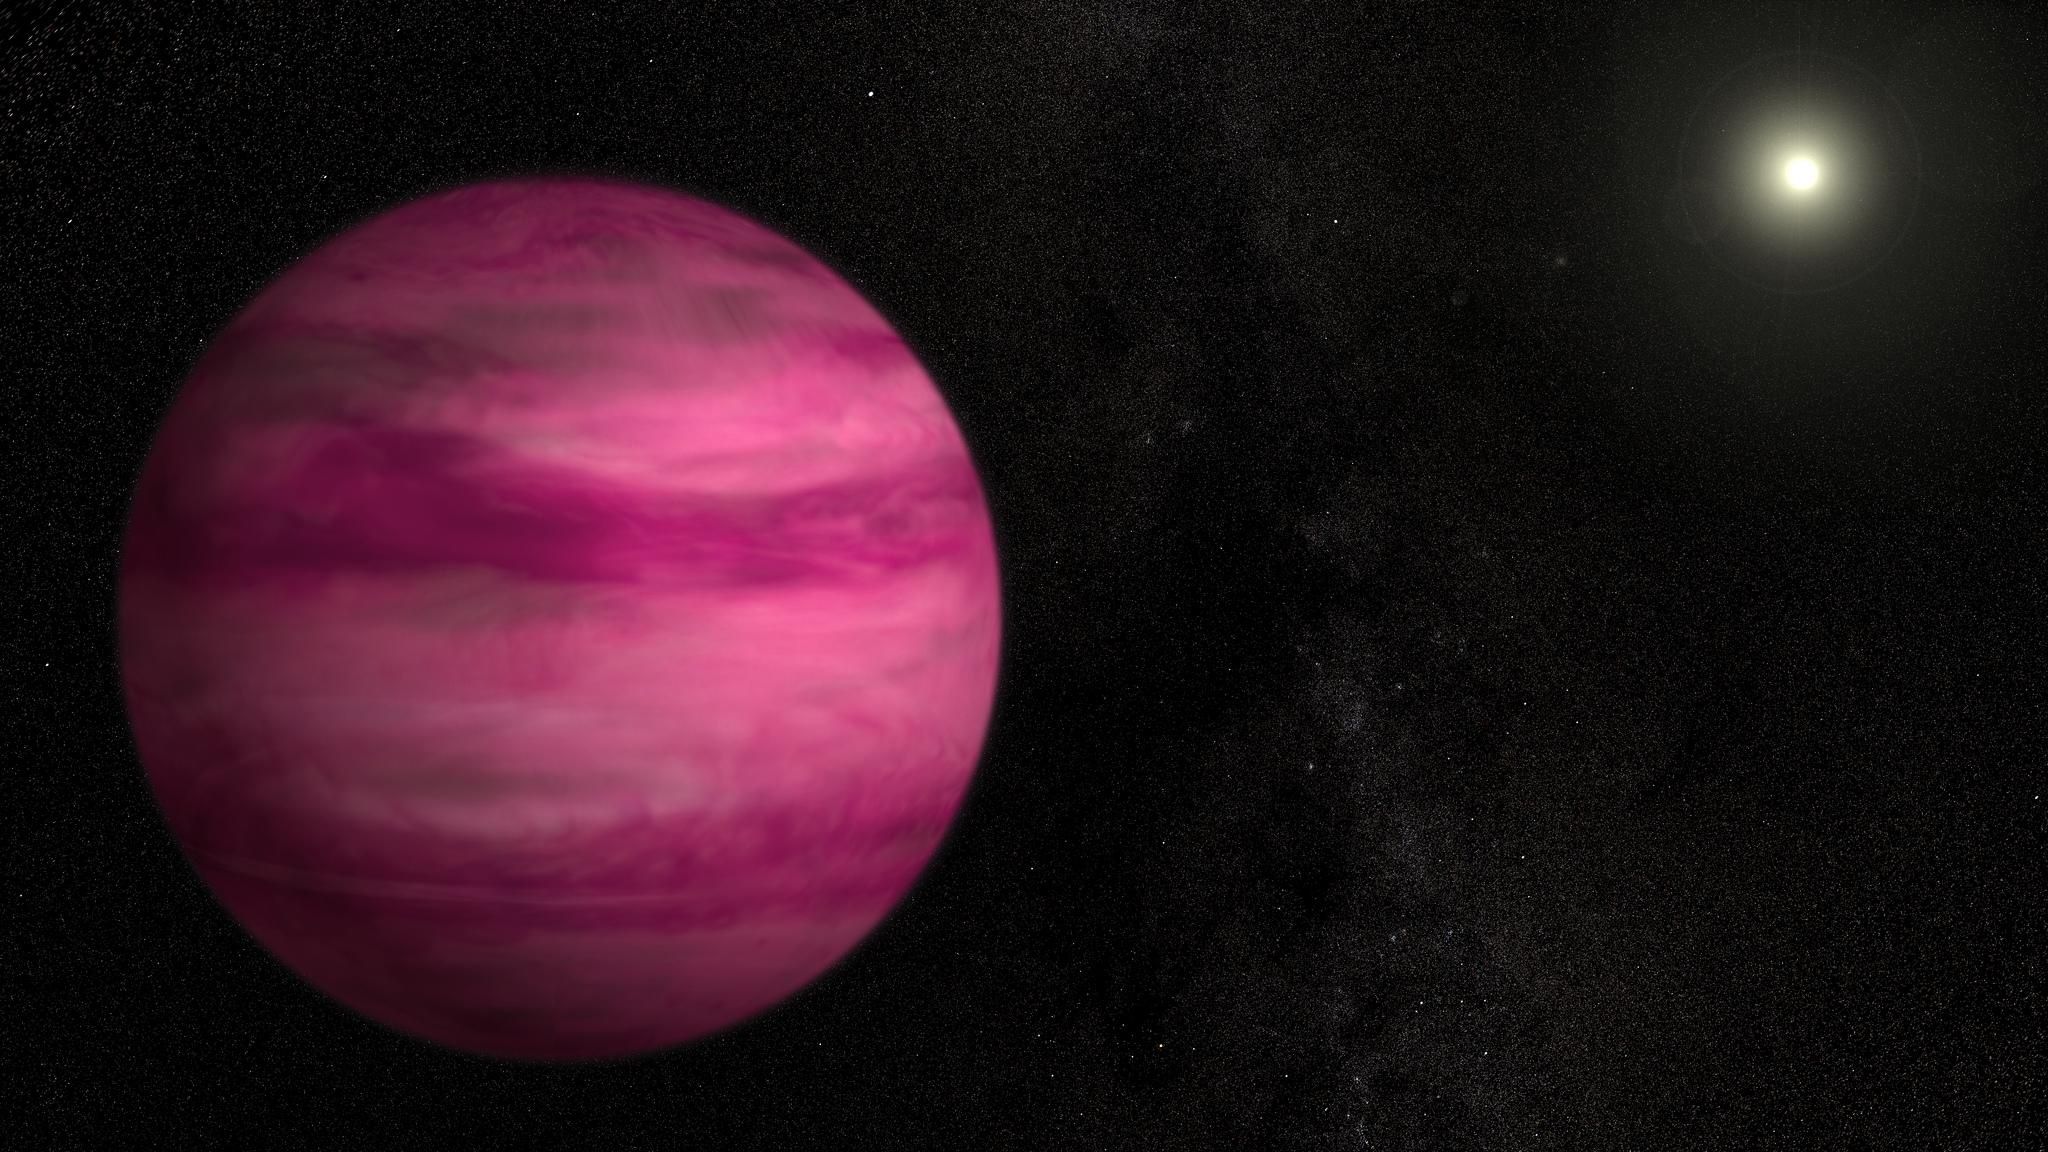 NASA publica una imagen de un impresionante planeta Rosa.